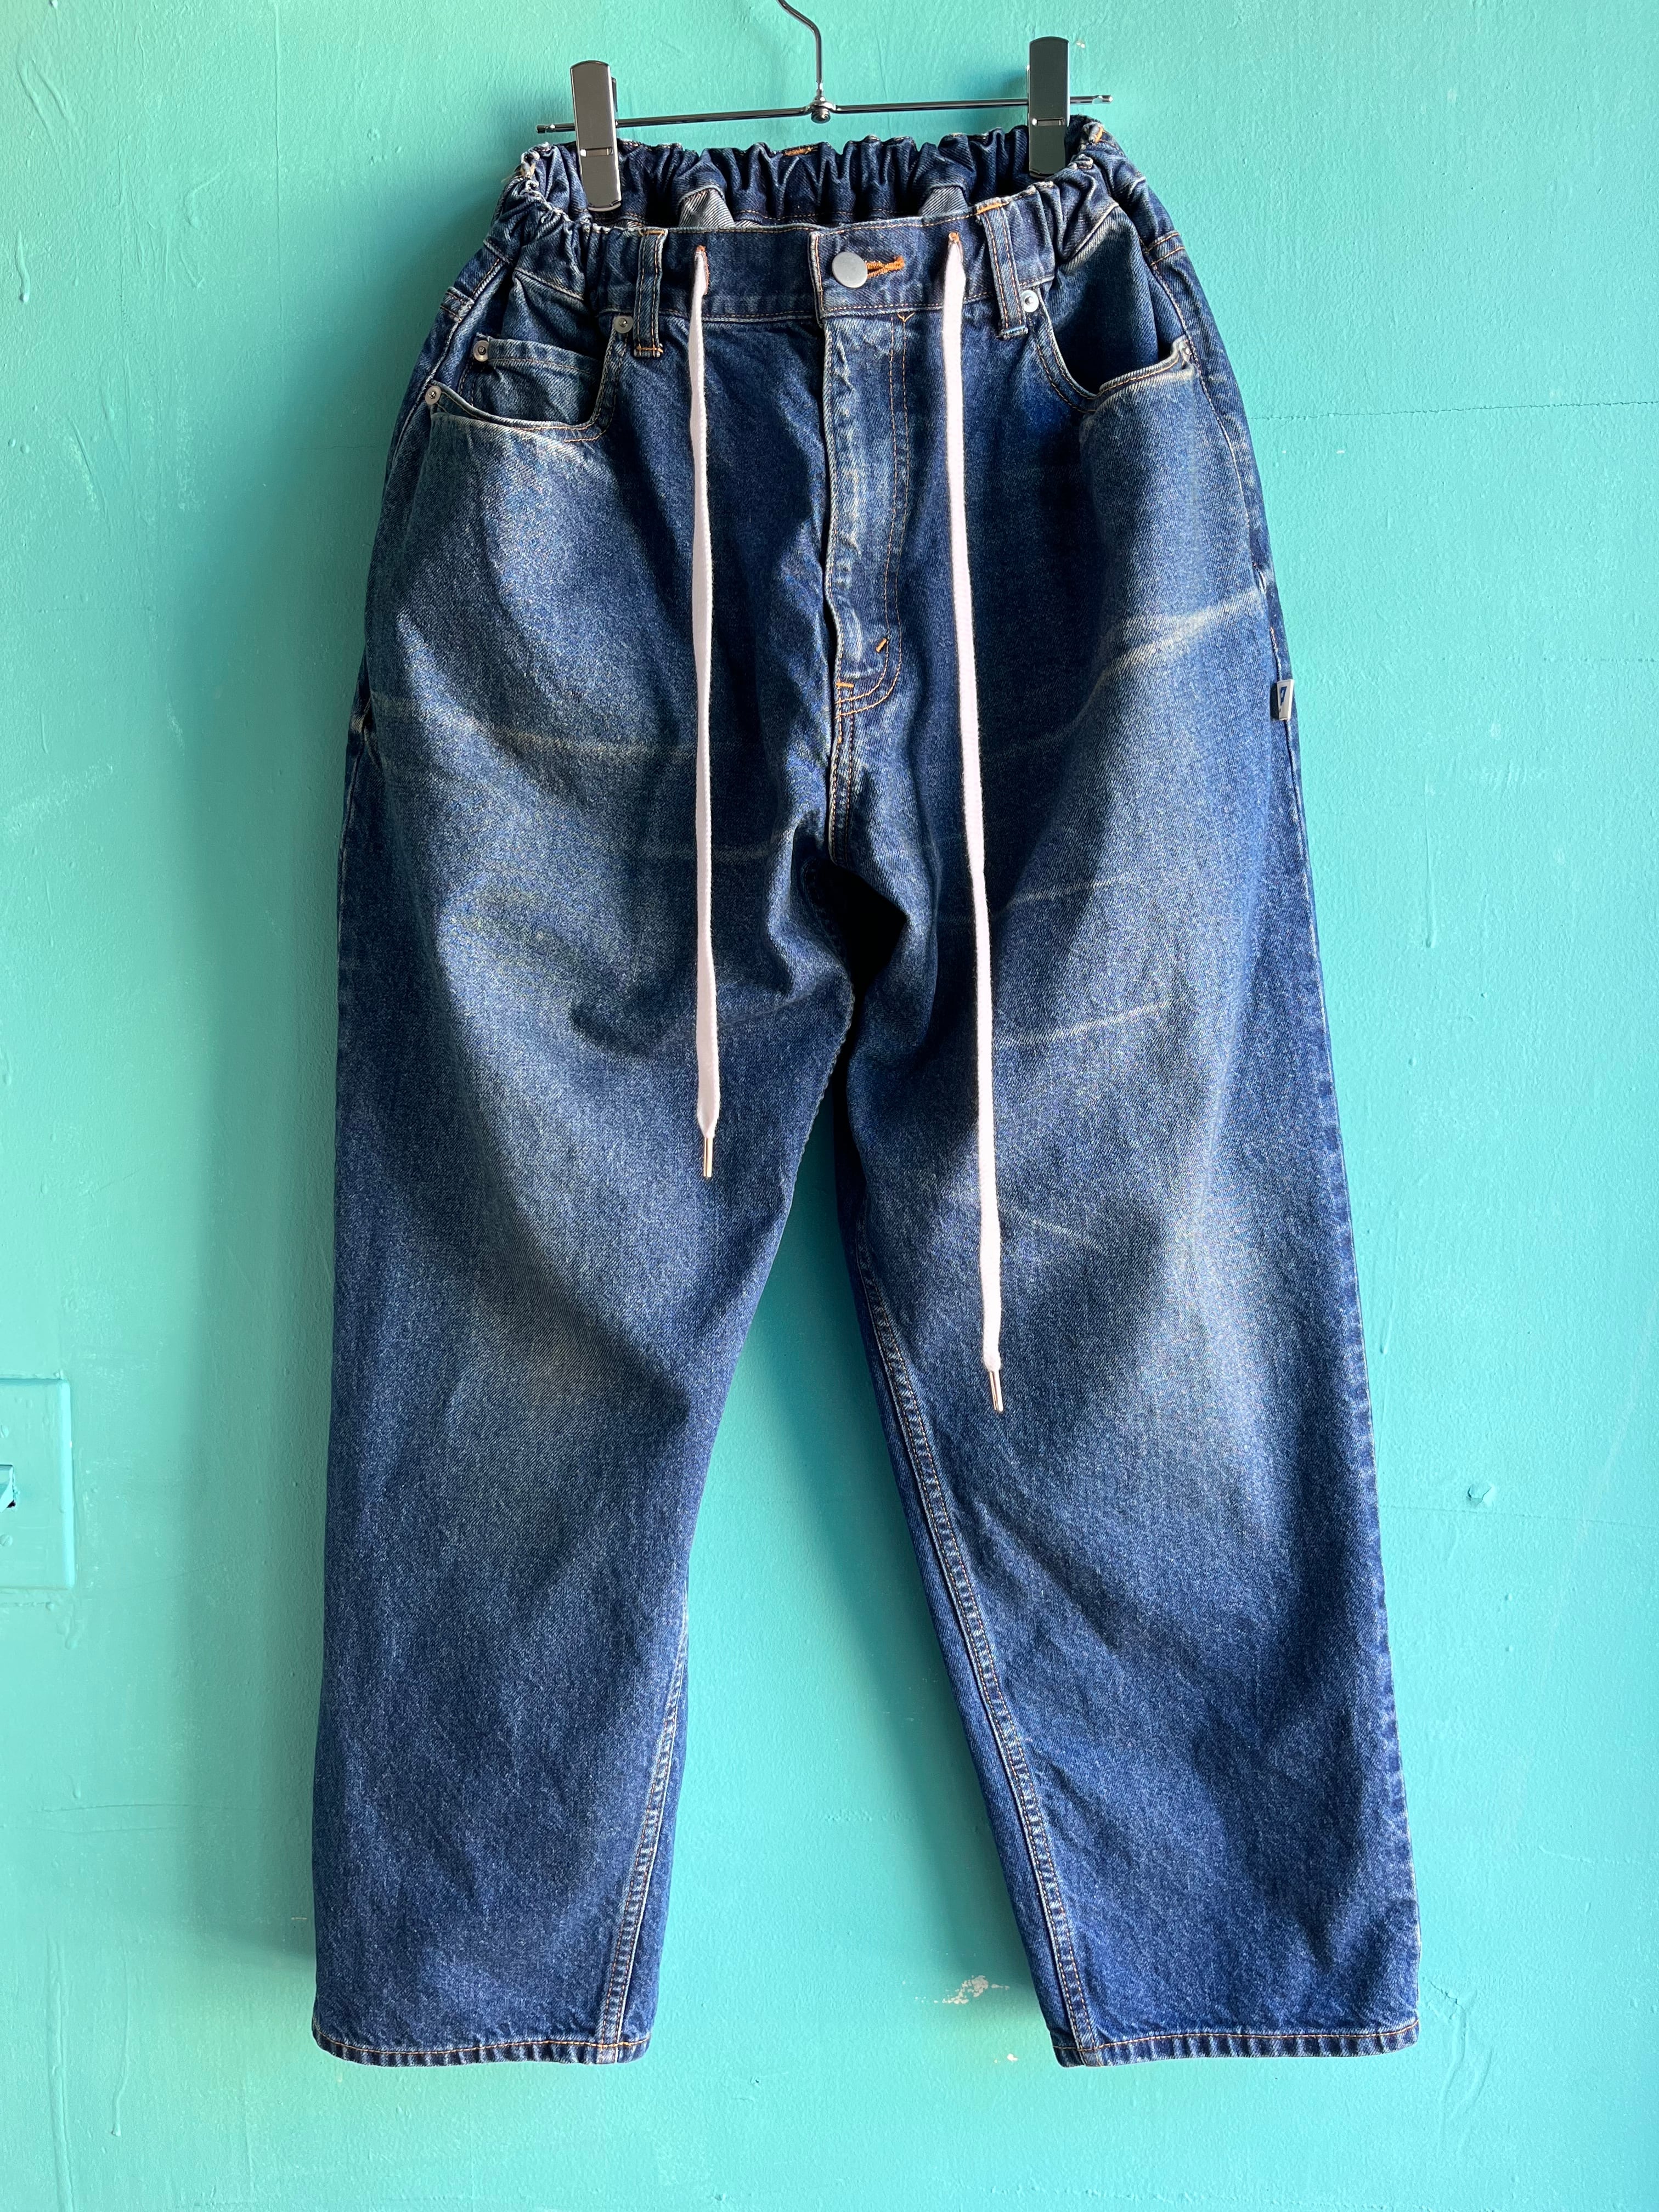 Men's Pants - Work Pants & Duck Canvas Jeans , Green